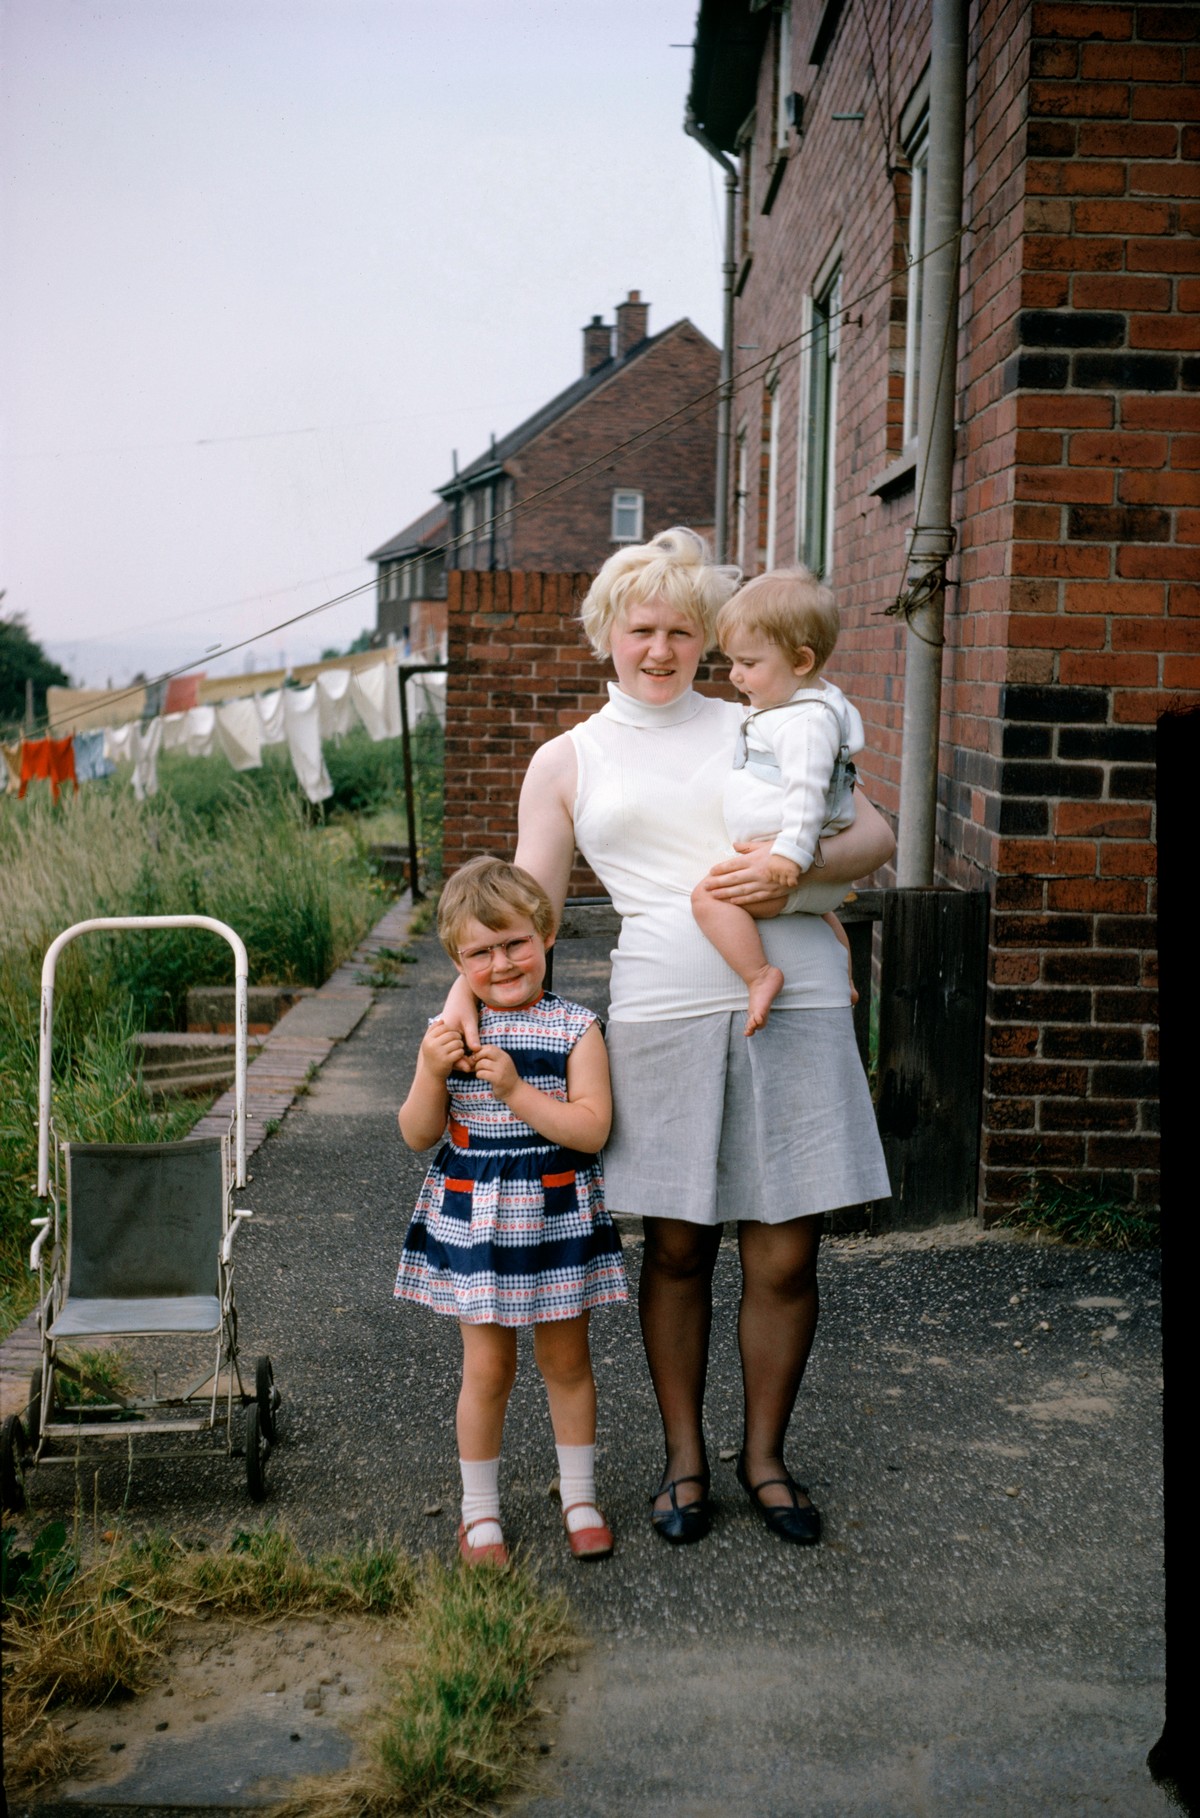 Жизнь в Британии 1940-1970-х в анонимном фотопроекте